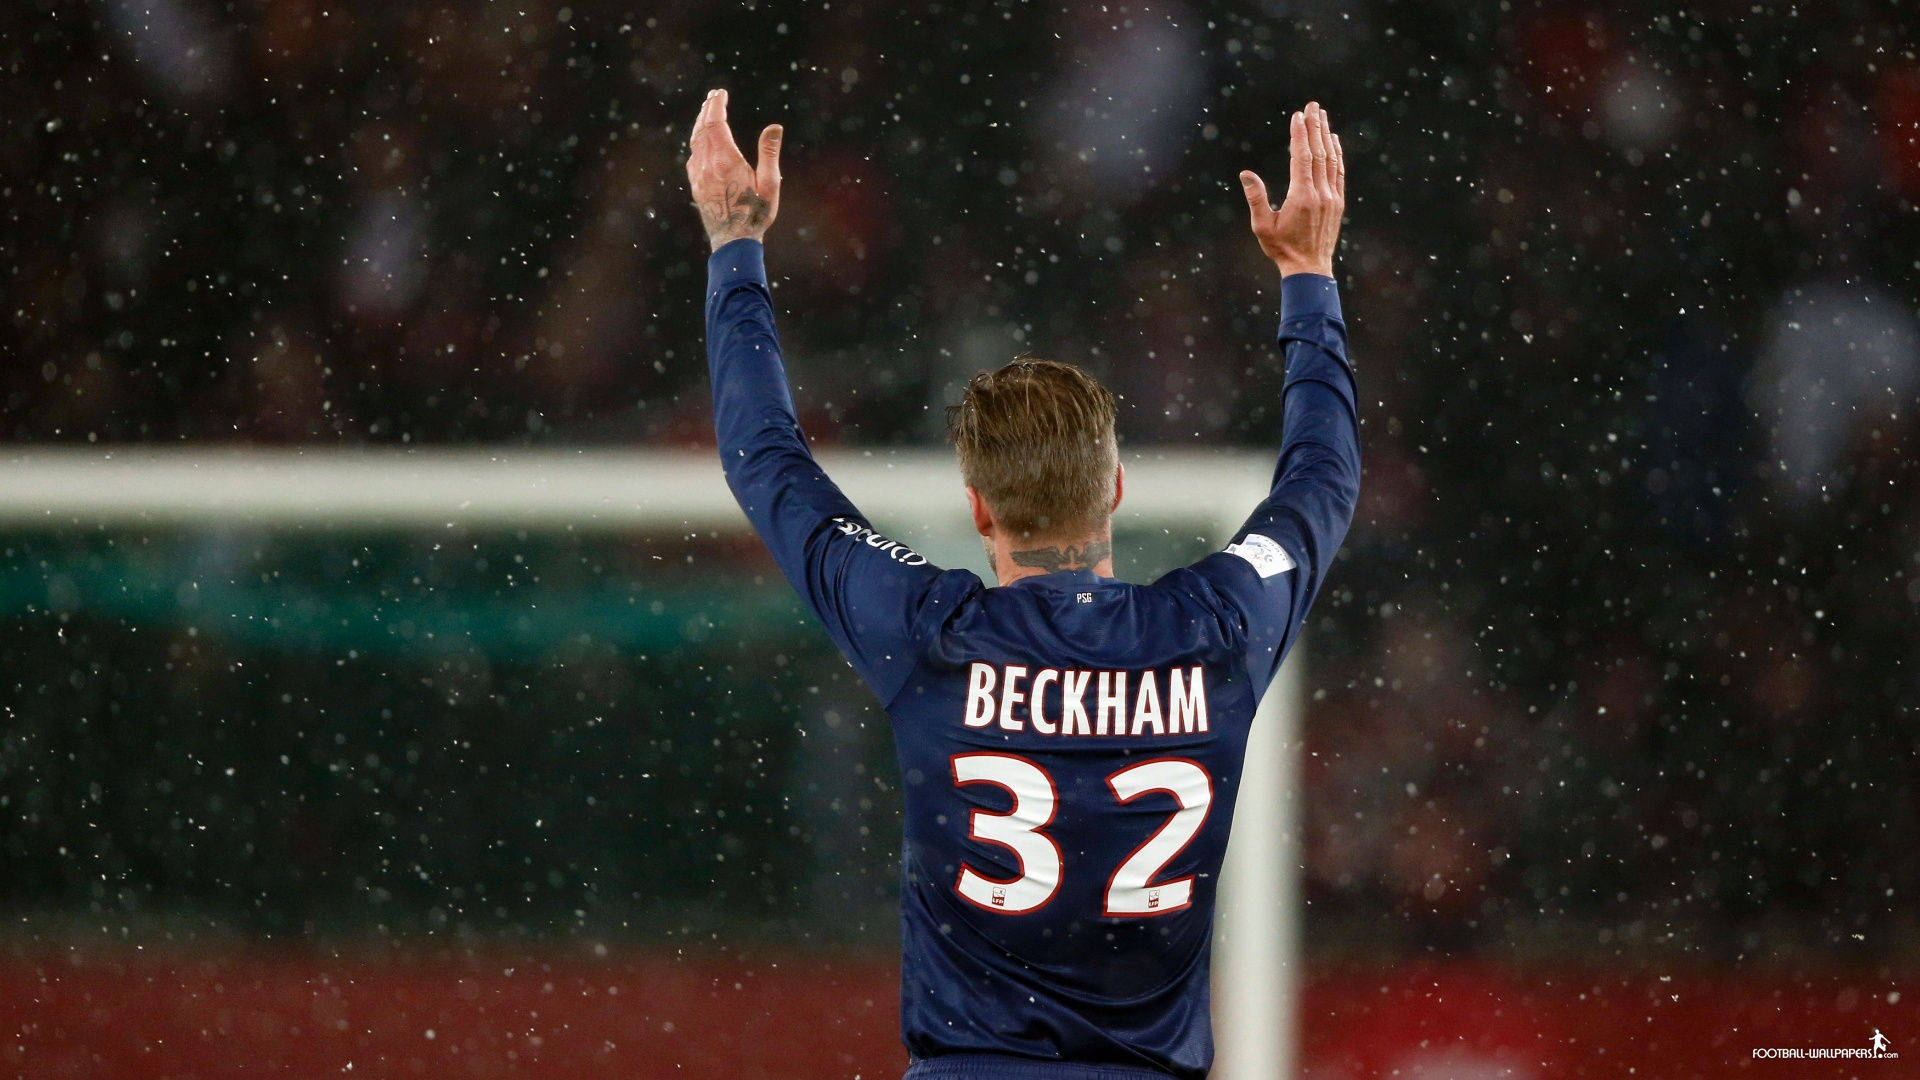 David Beckham playing for F.C. Paris Saint-Germain Wallpaper